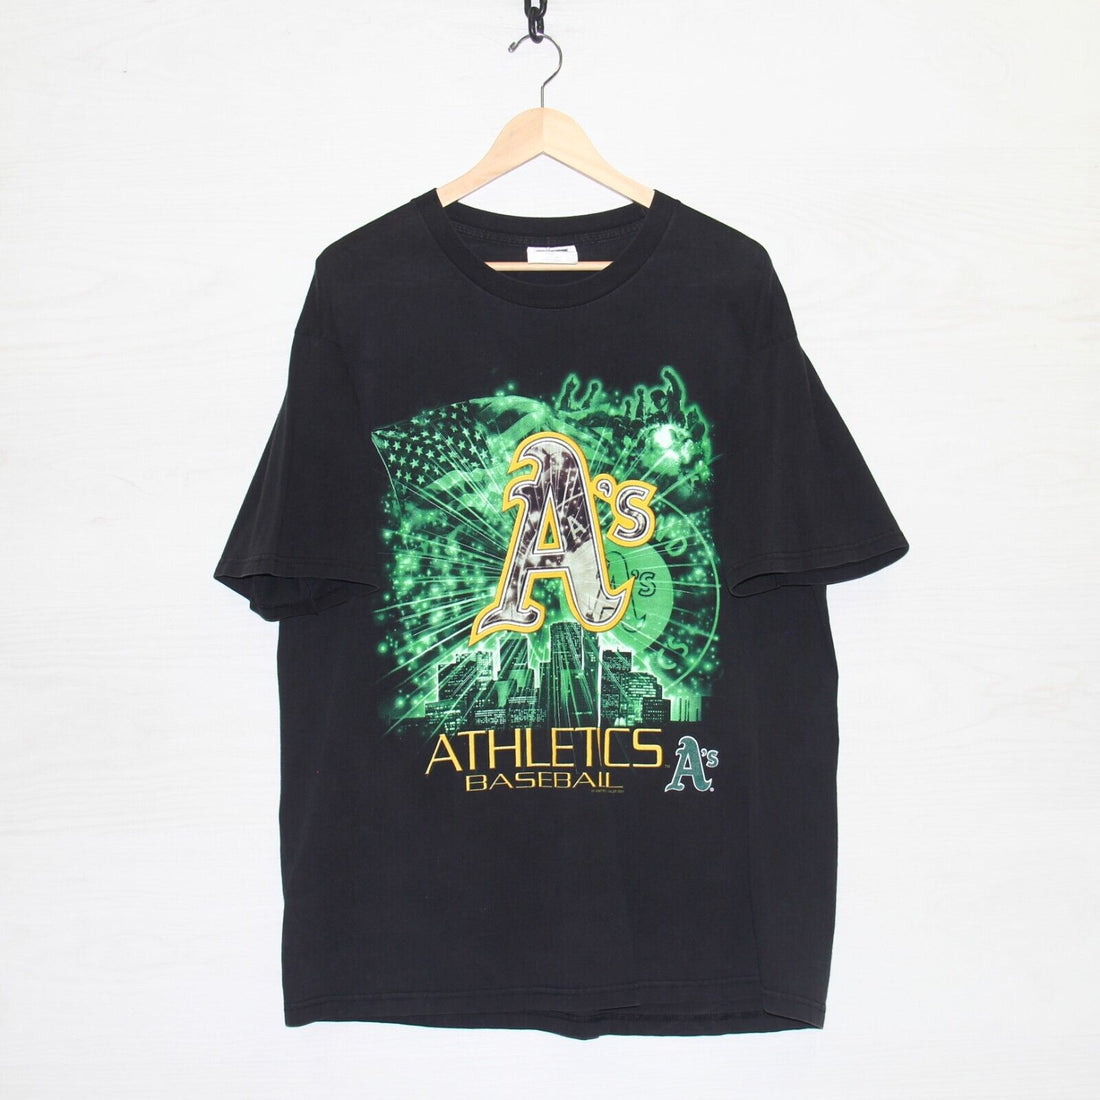 Vintage Oakland Athletics T-Shirt Size XL Black 2001 MLB